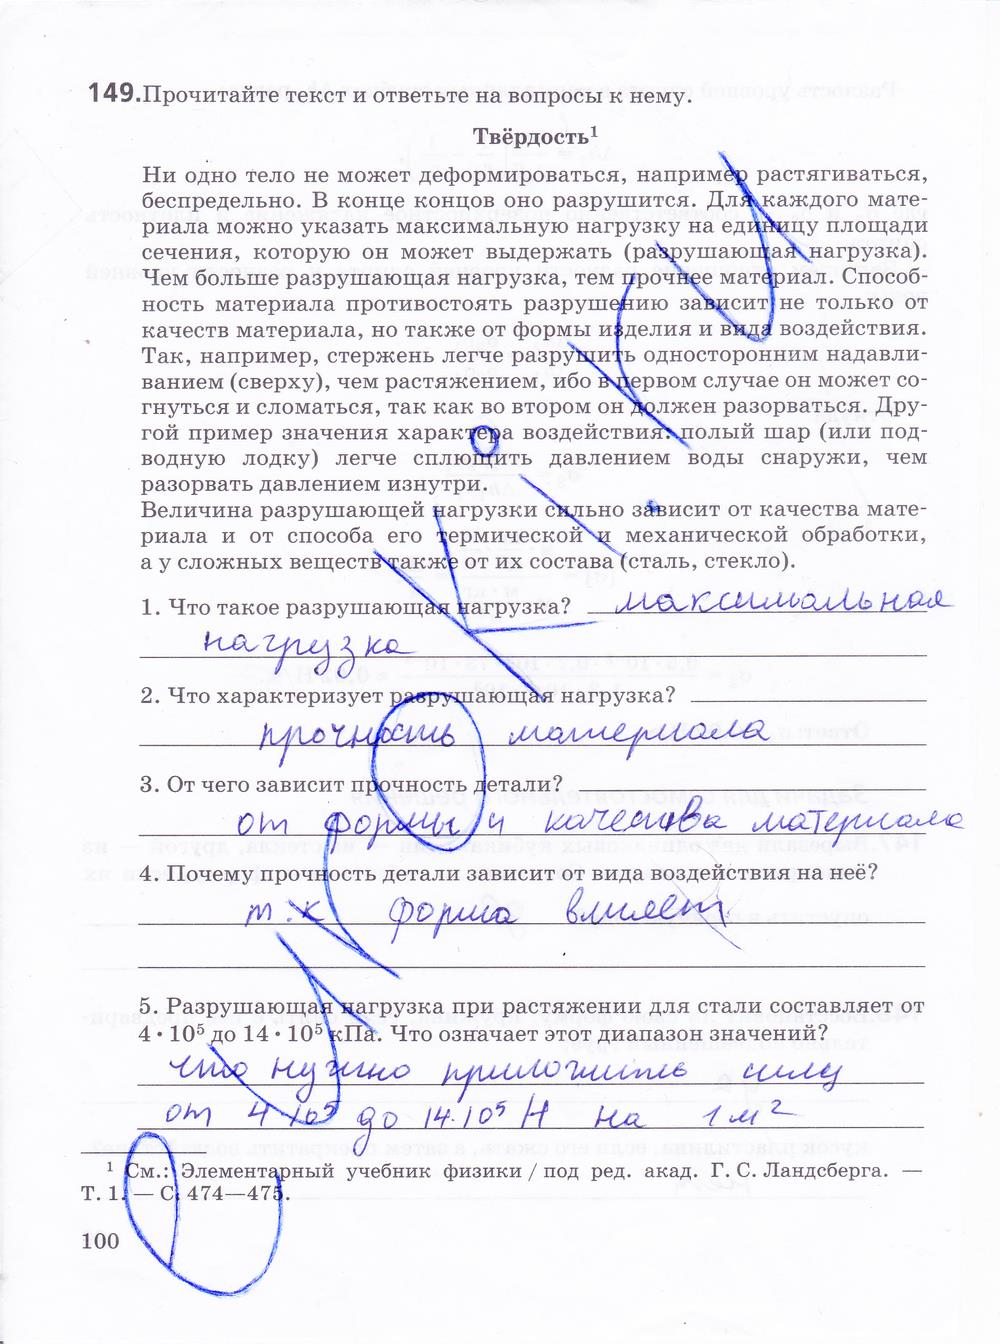 гдз 10 класс рабочая тетрадь страница 100 физика Пурышева, Важеевская